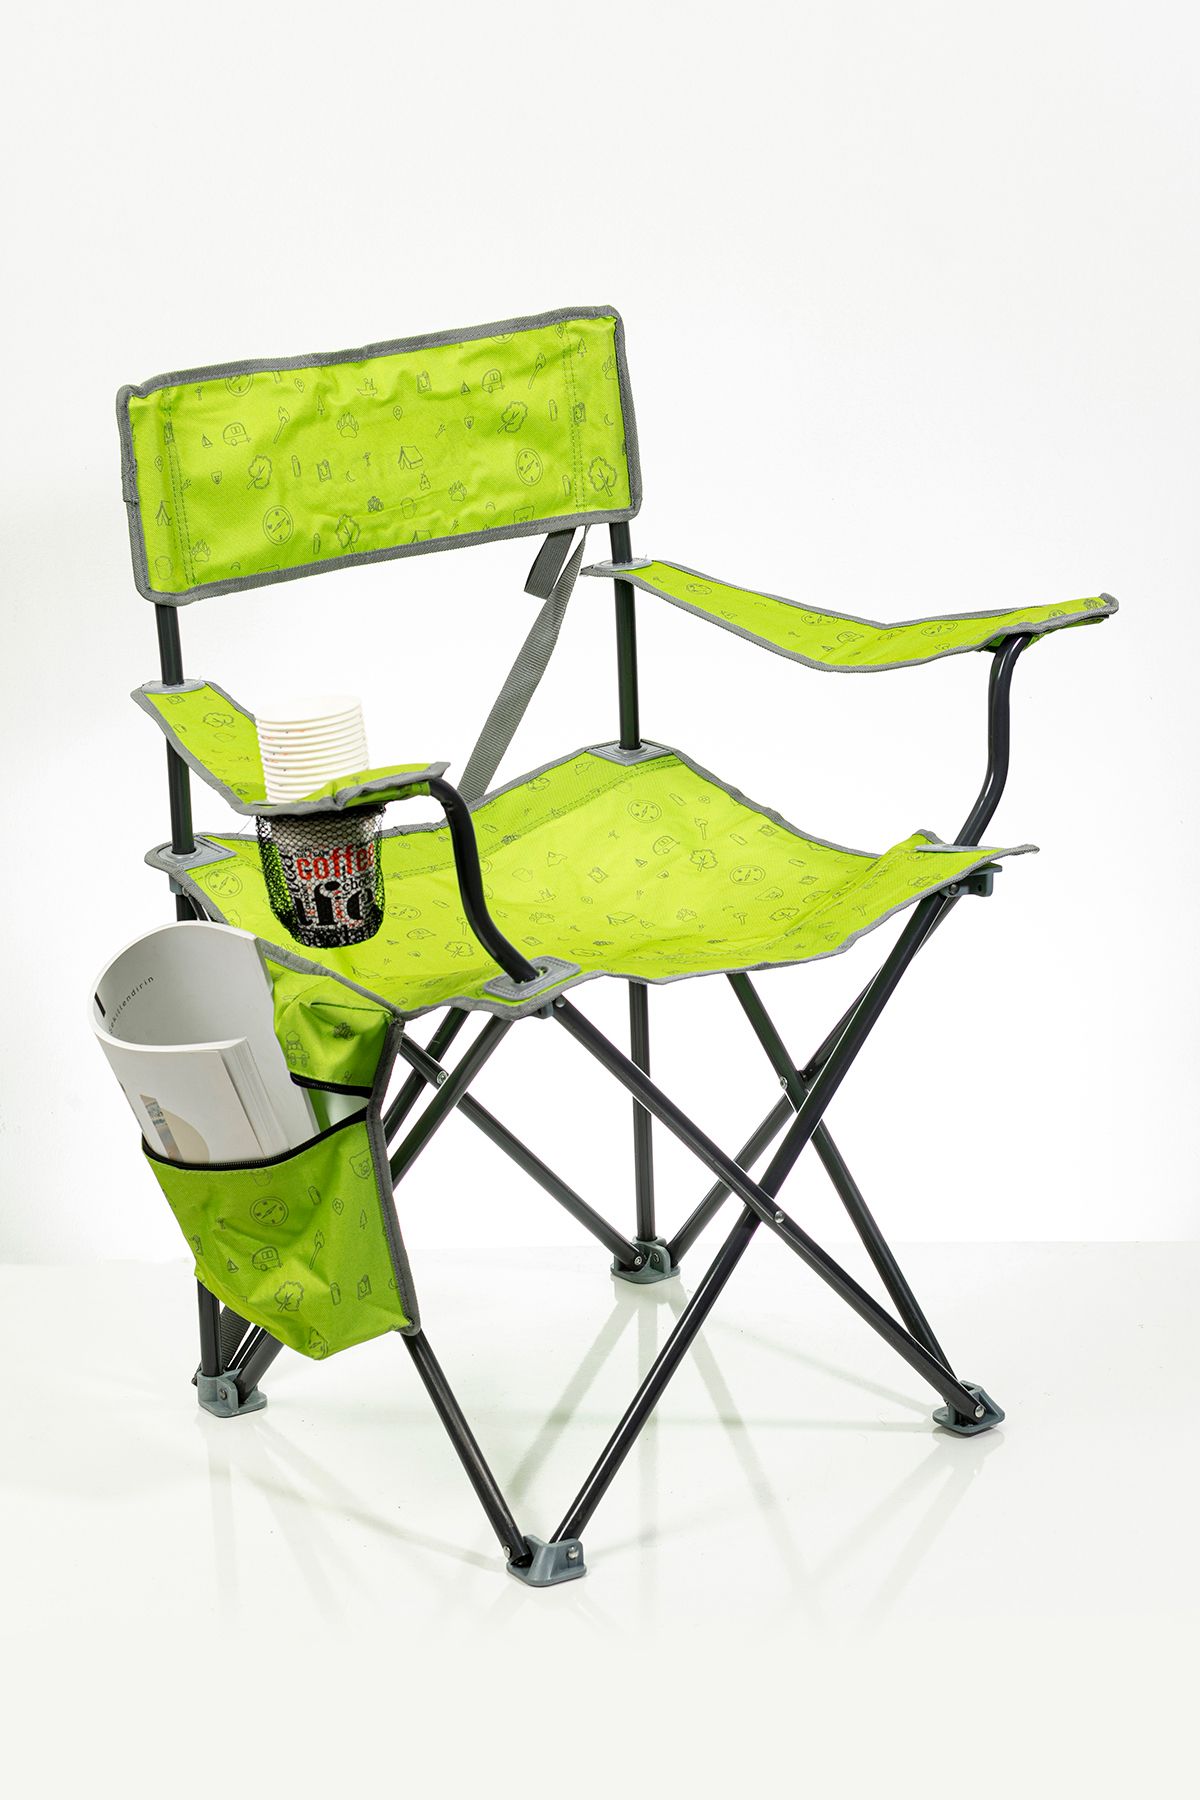 kampseti Kaliteli Buzluklu Katlanır Kamp Sandalyesi-renkli Kumaş-piknik Ve Plaj Sandalyesi